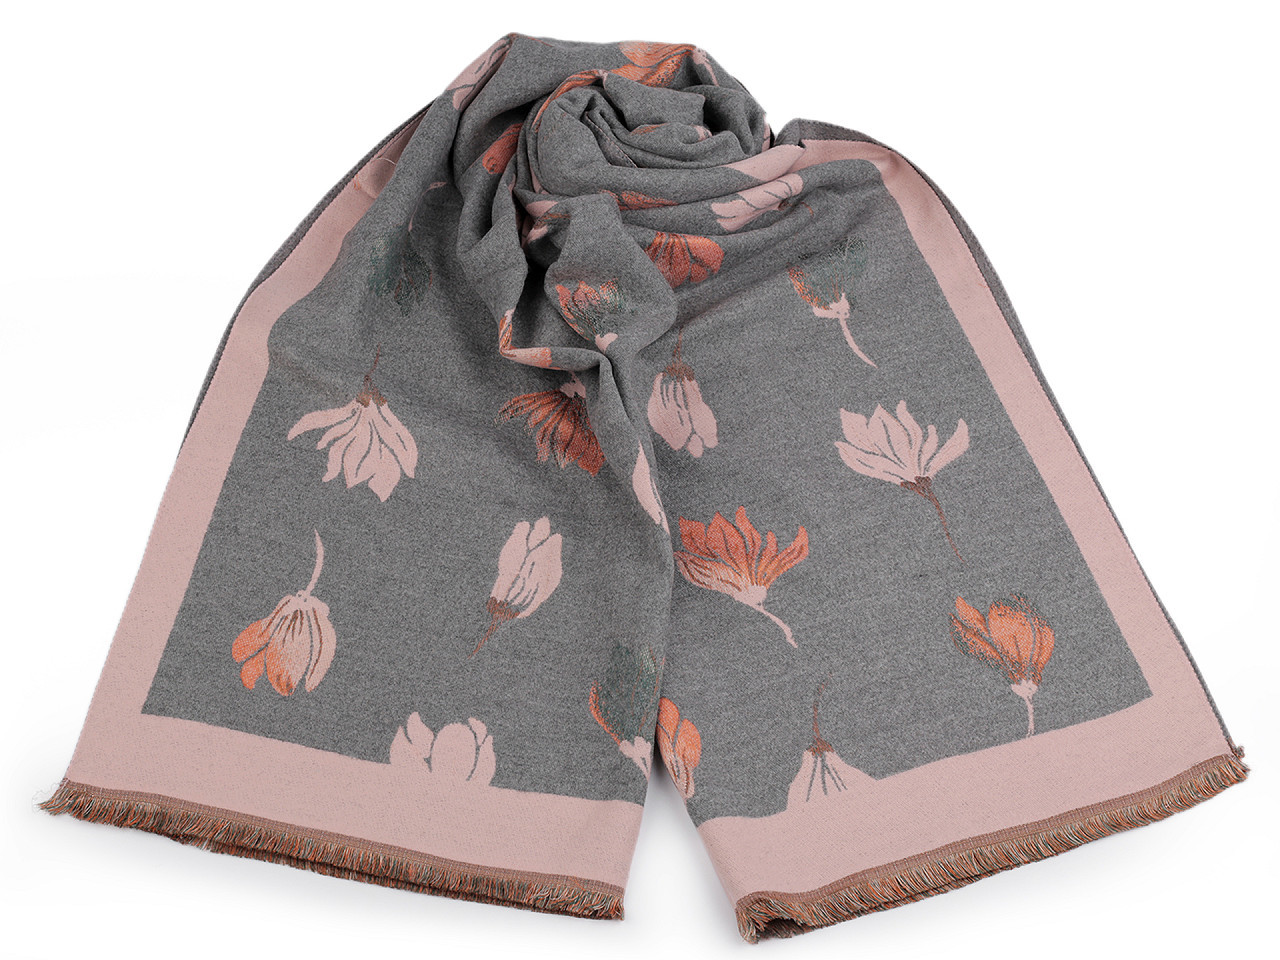 Šátek / šála typu kašmír s třásněmi, květy 65x190 cm, barva 16 šedá pudrová